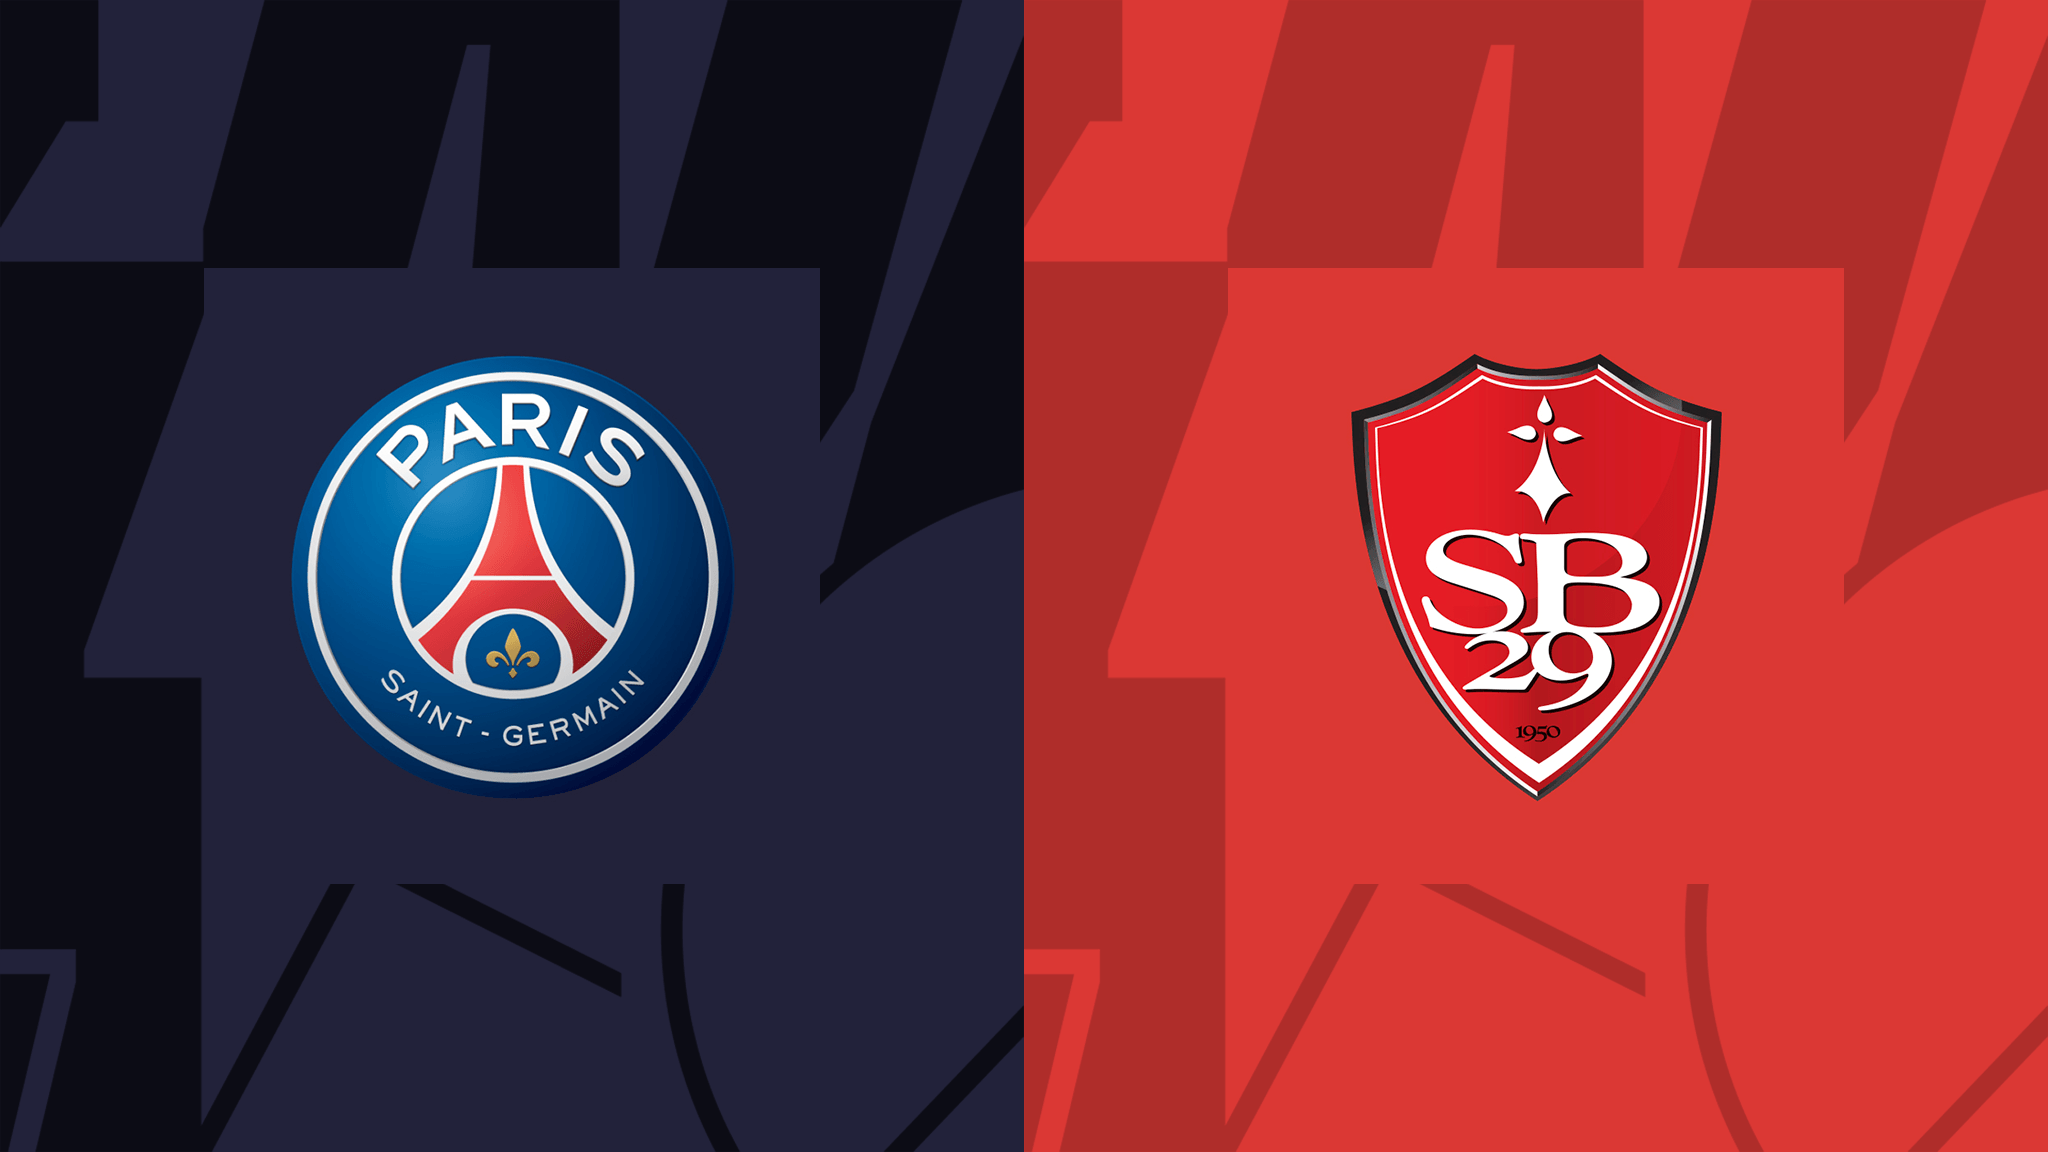 مشاهدة مباراة باريس سان جيرمان و ستاد بريست 29 بث مباشر 10-09-2022 PSG vs Brest￼